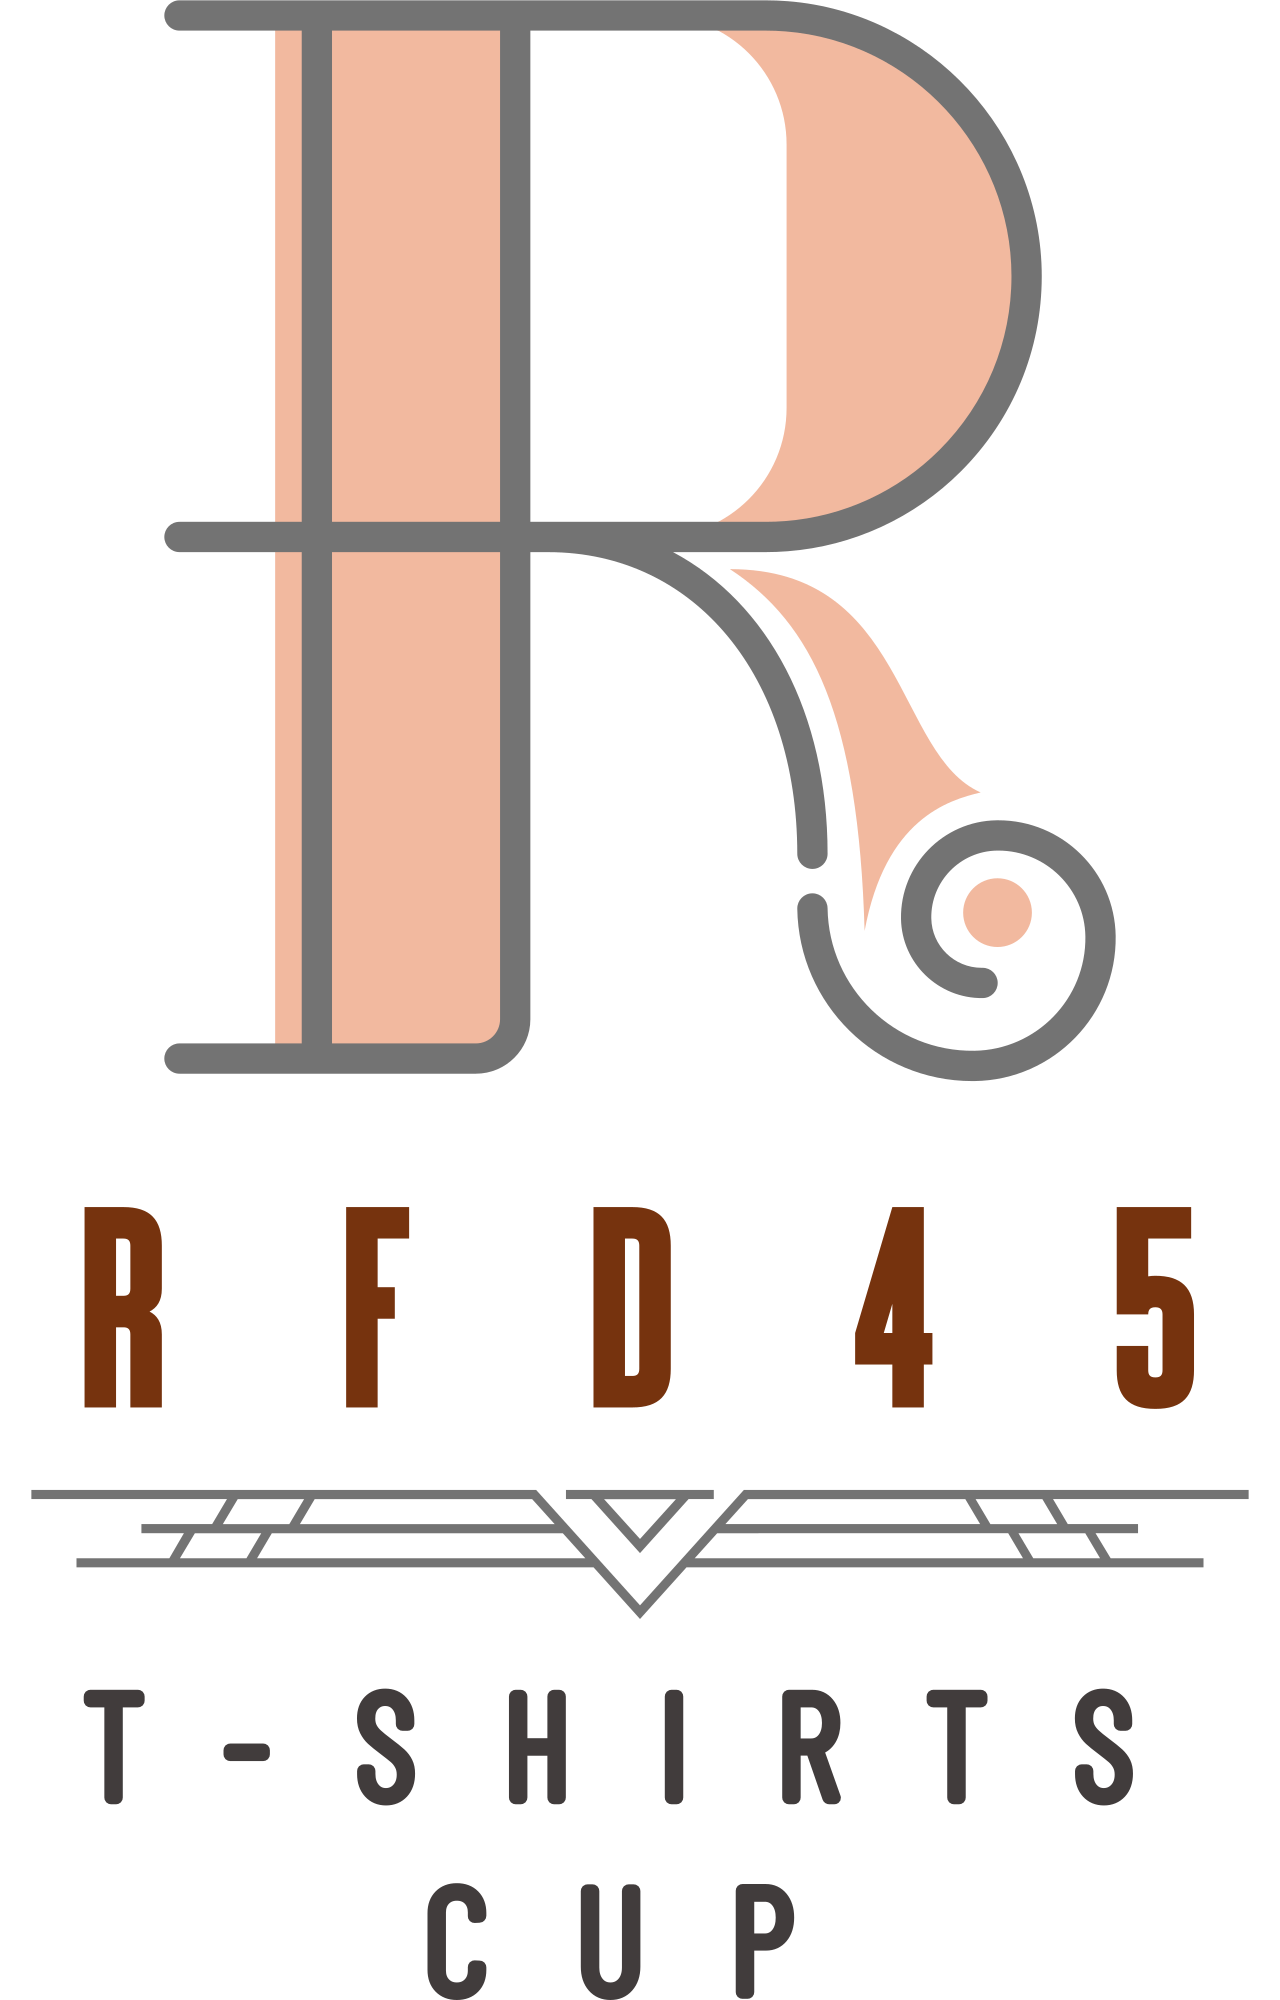 R F D 4 5's logo